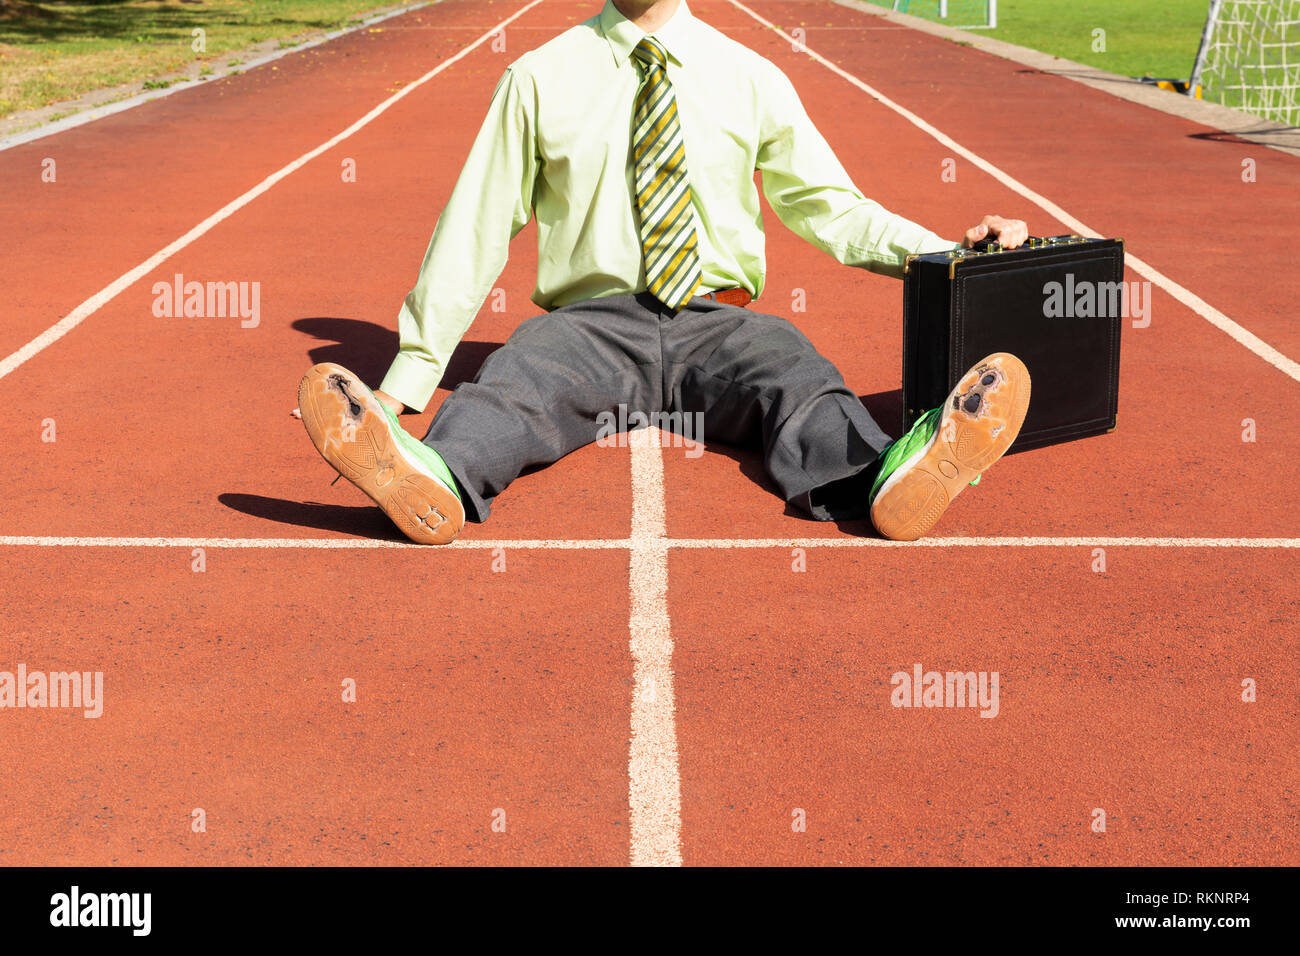 Ein erschöpfter business Mann im grauen Anzug mit grünem Hemd und Krawatte  schwarz Aktenkoffer und gebrochen grüne Schuhe sitzen auf eine Laufstrecke  Stockfotografie - Alamy